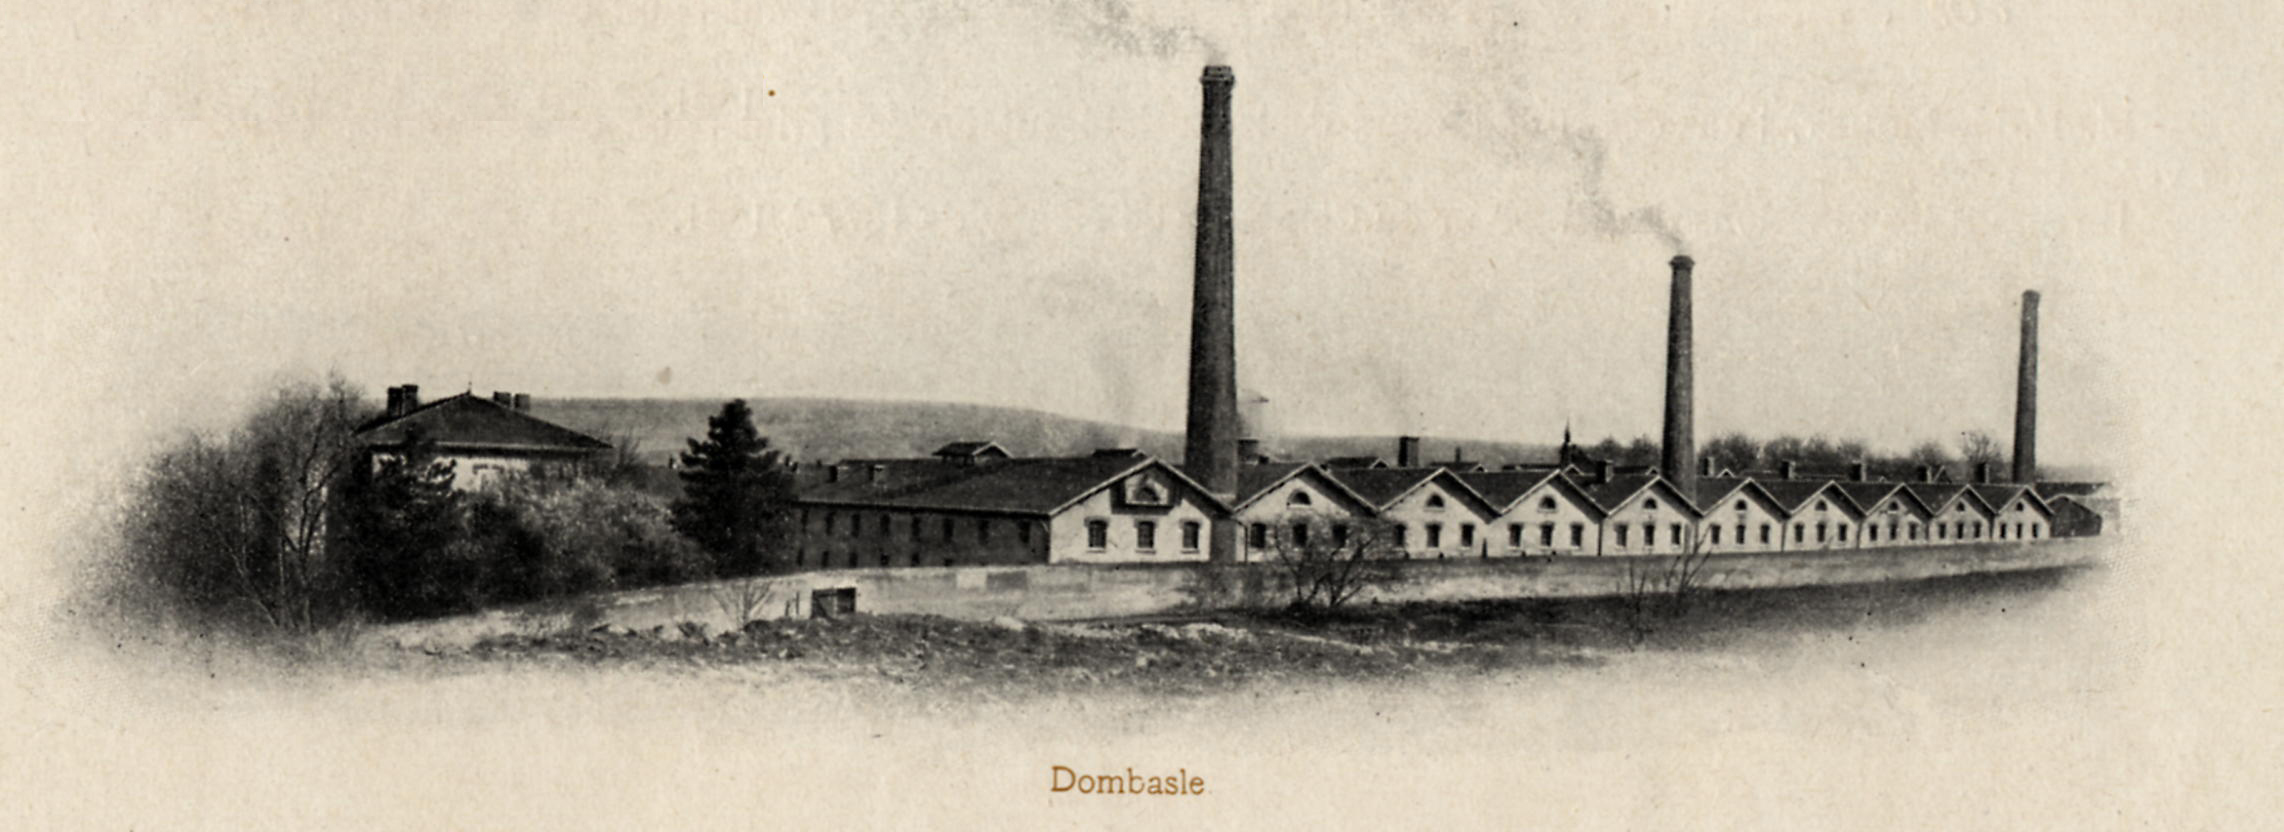 1900 Dombasle - Octobon